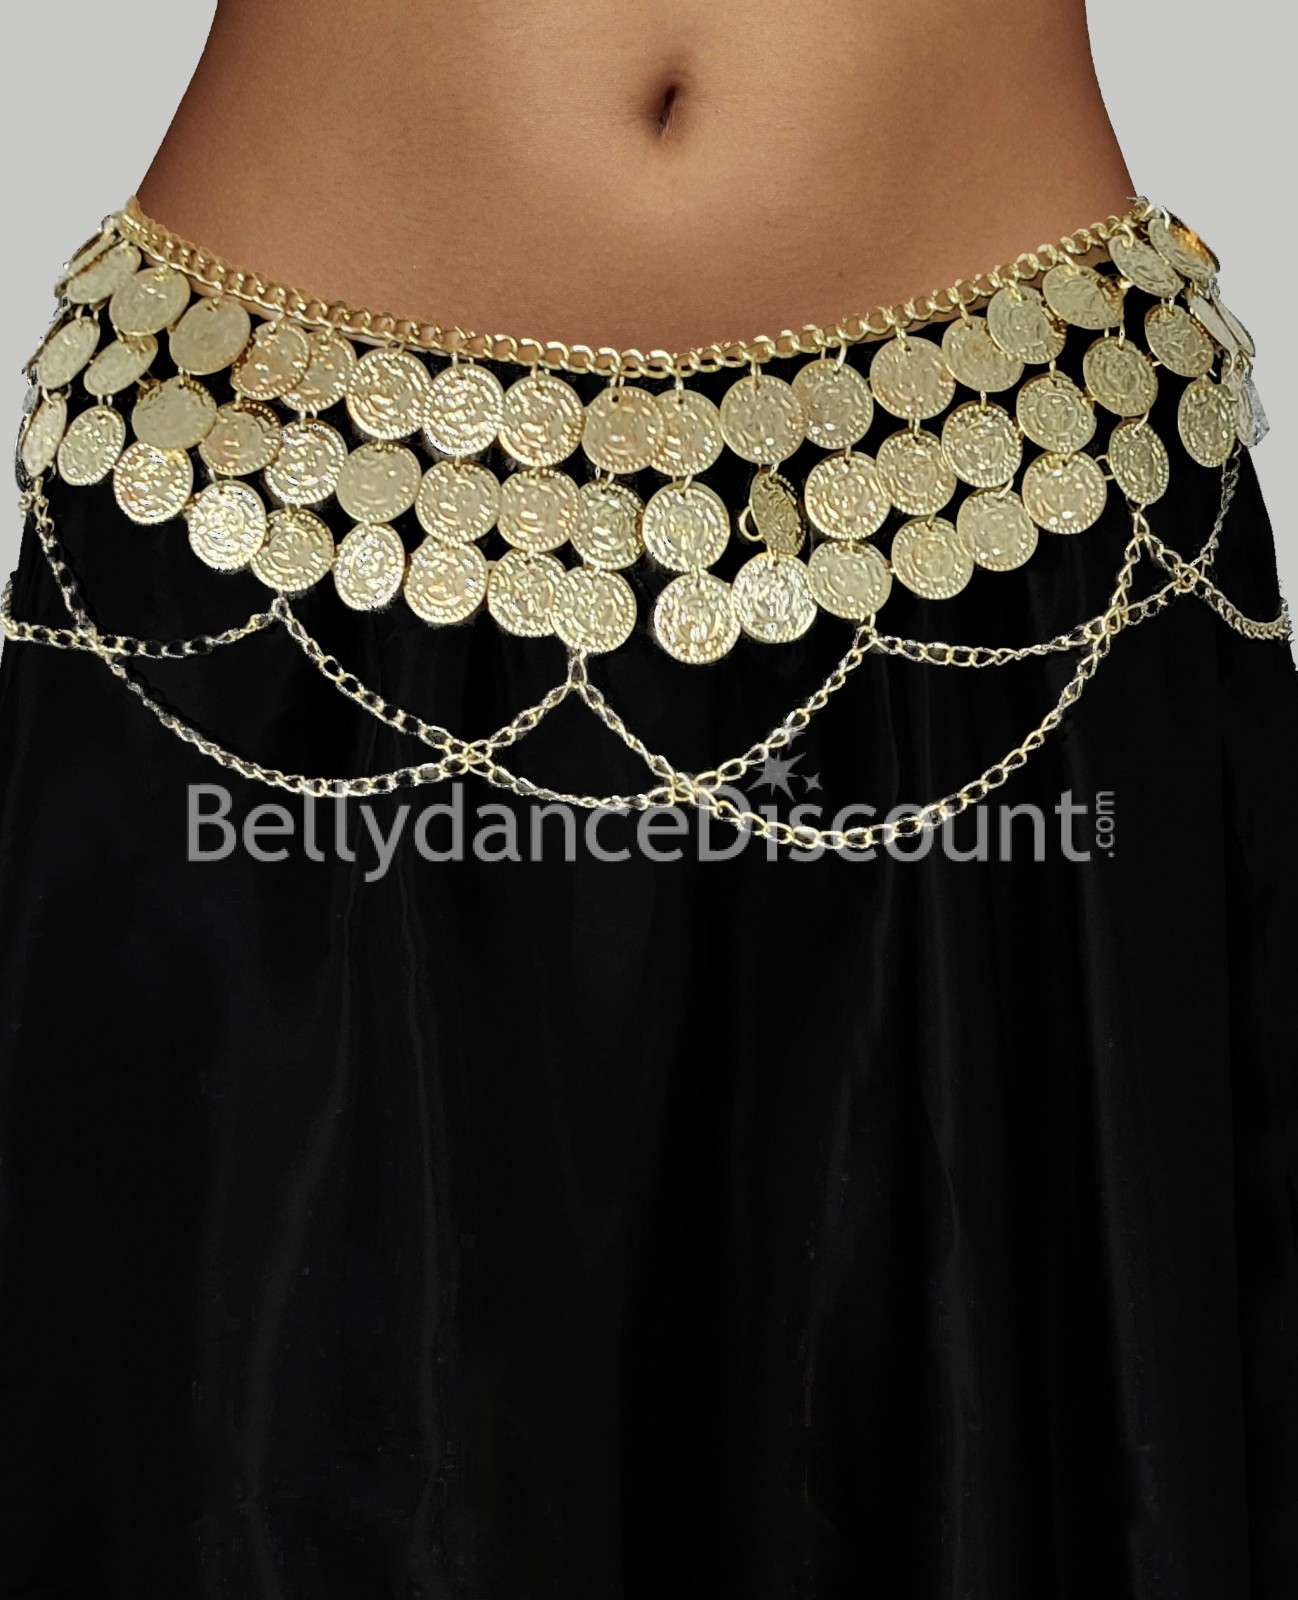 Oriental dance golden belt with sequins - 15,90 €